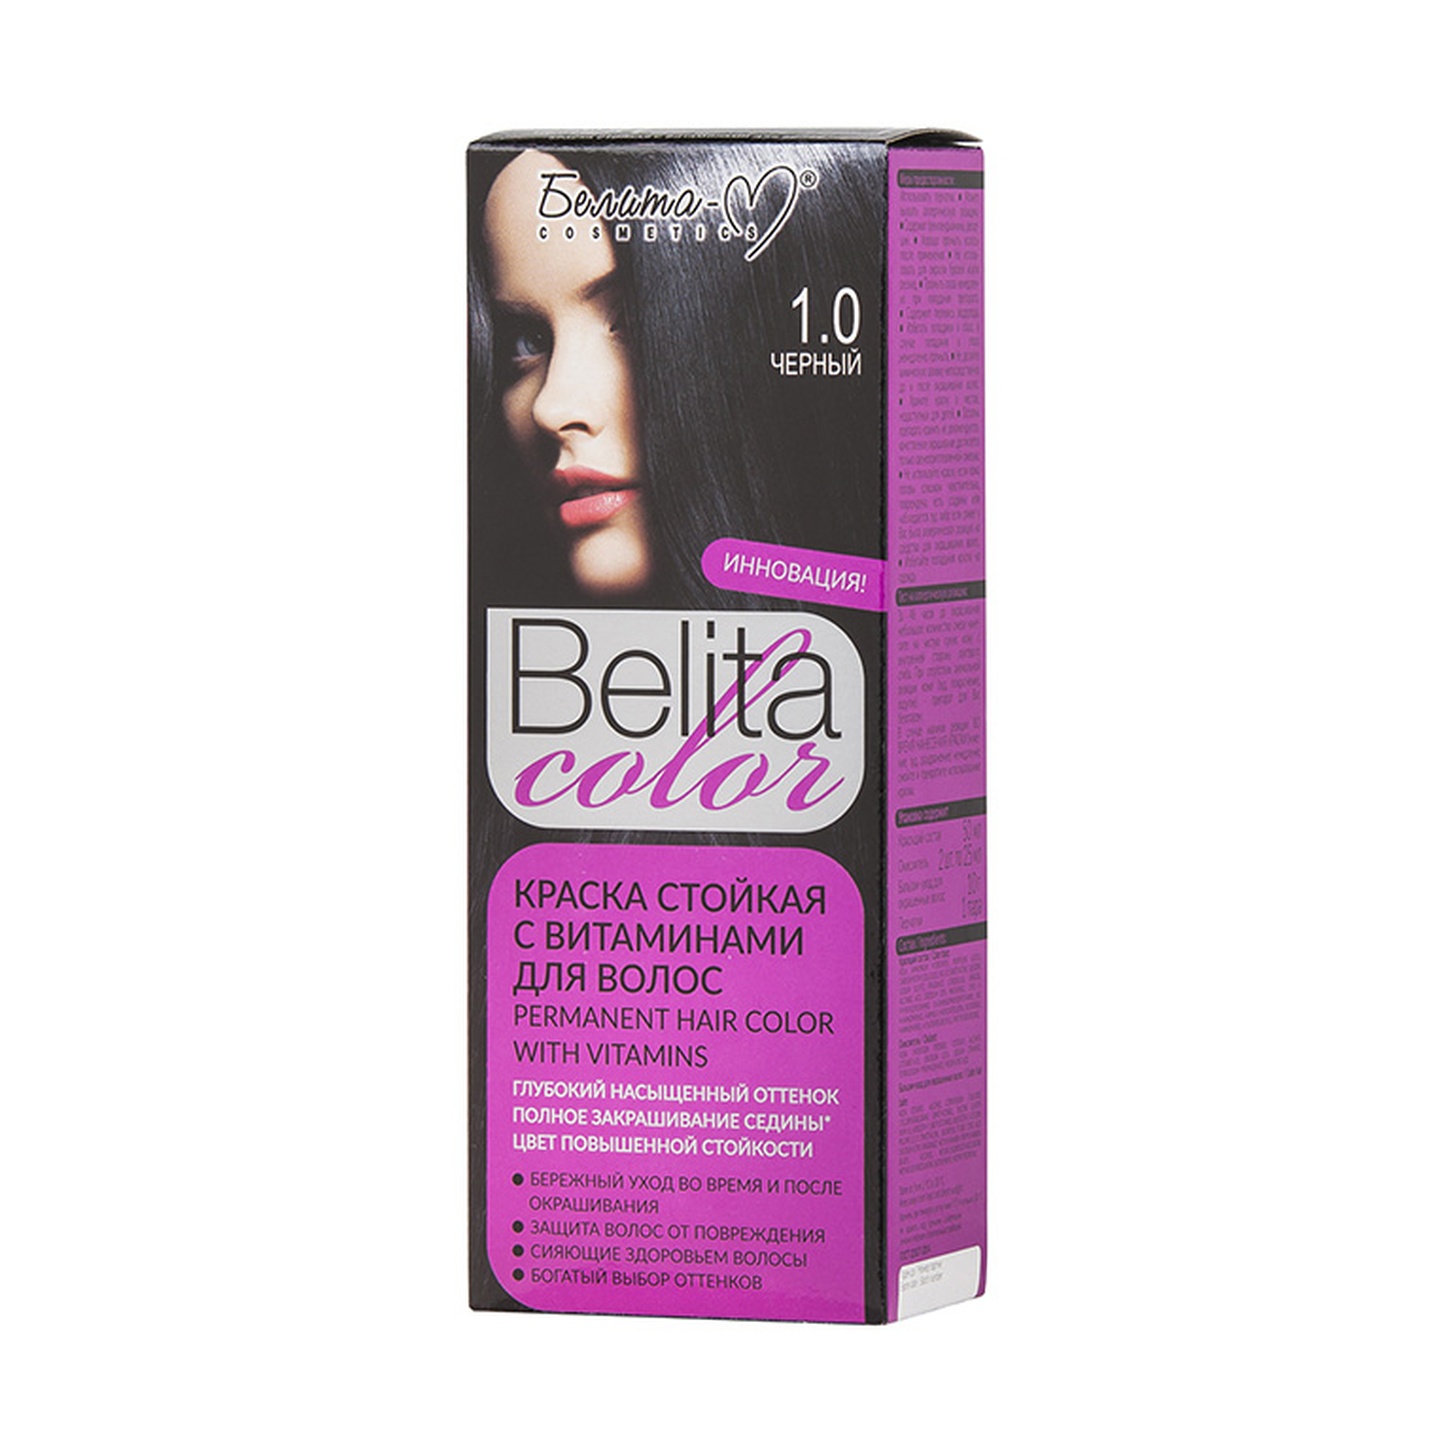 Краска стойкая с витаминами для волос Belita сolor № 1.0 Черный /Белита-М /16/ОПТ